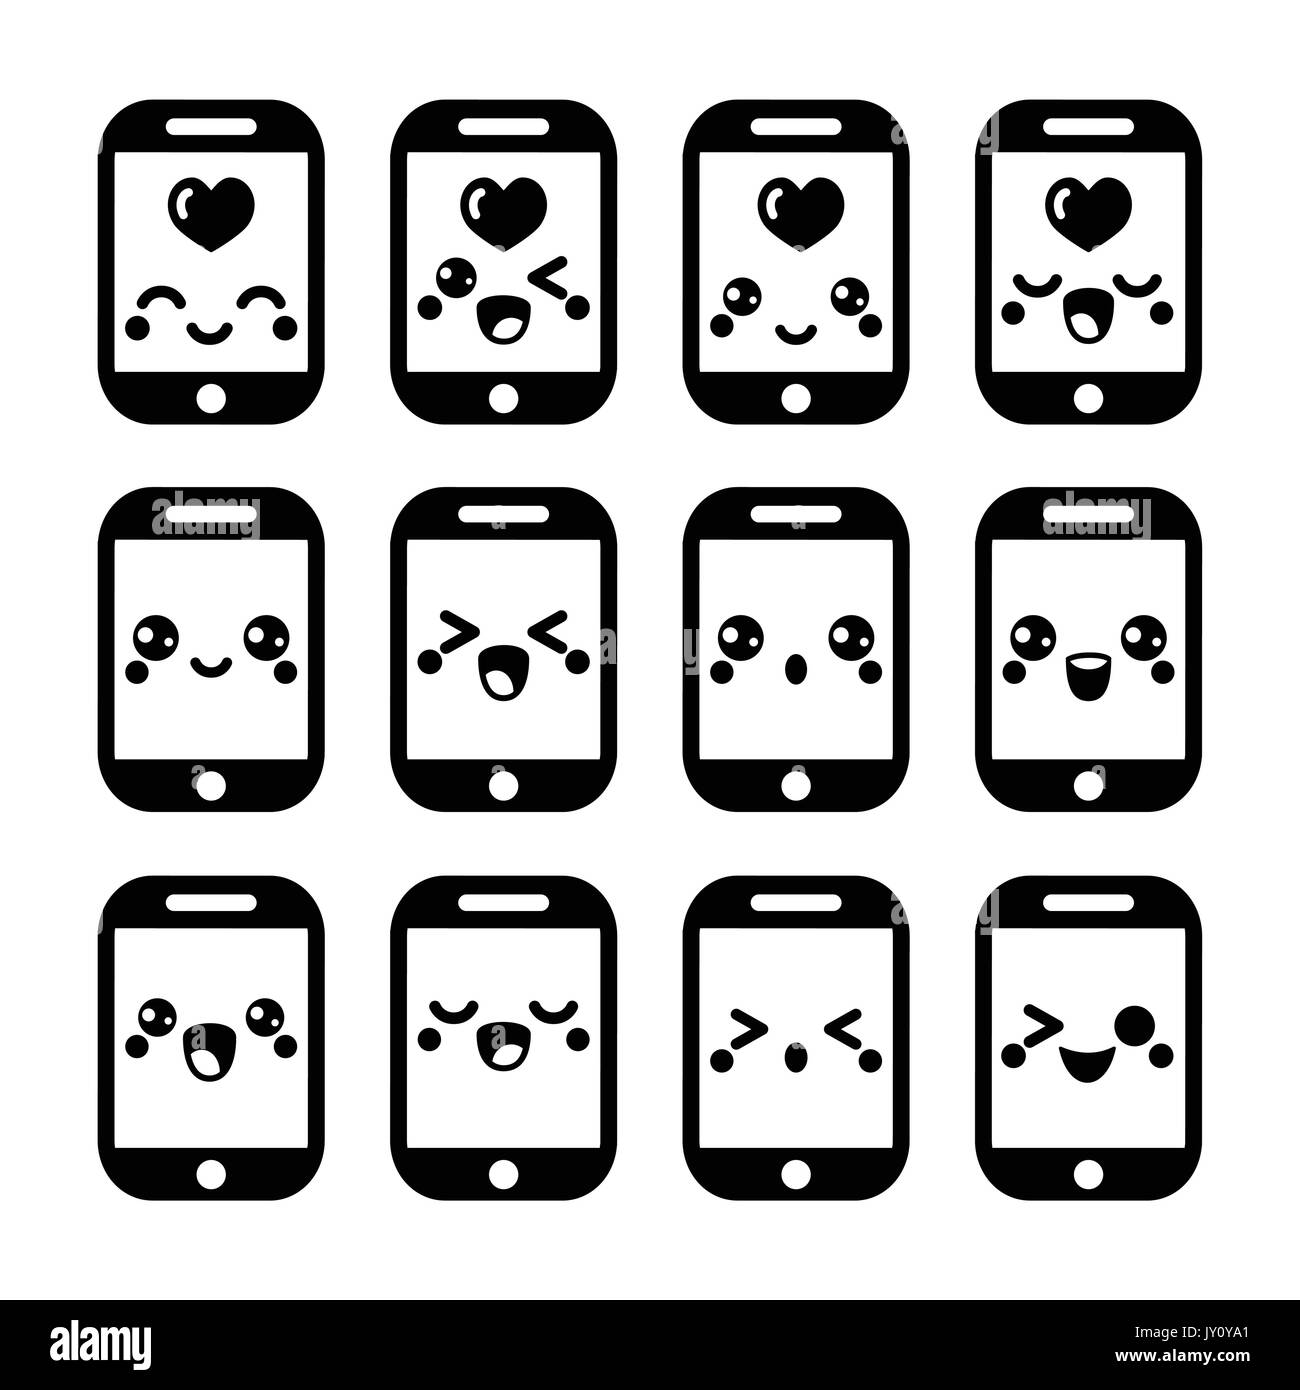 Japanische cute Kawaii Charakter - Handy oder Handy-Icons set Stock Vektor